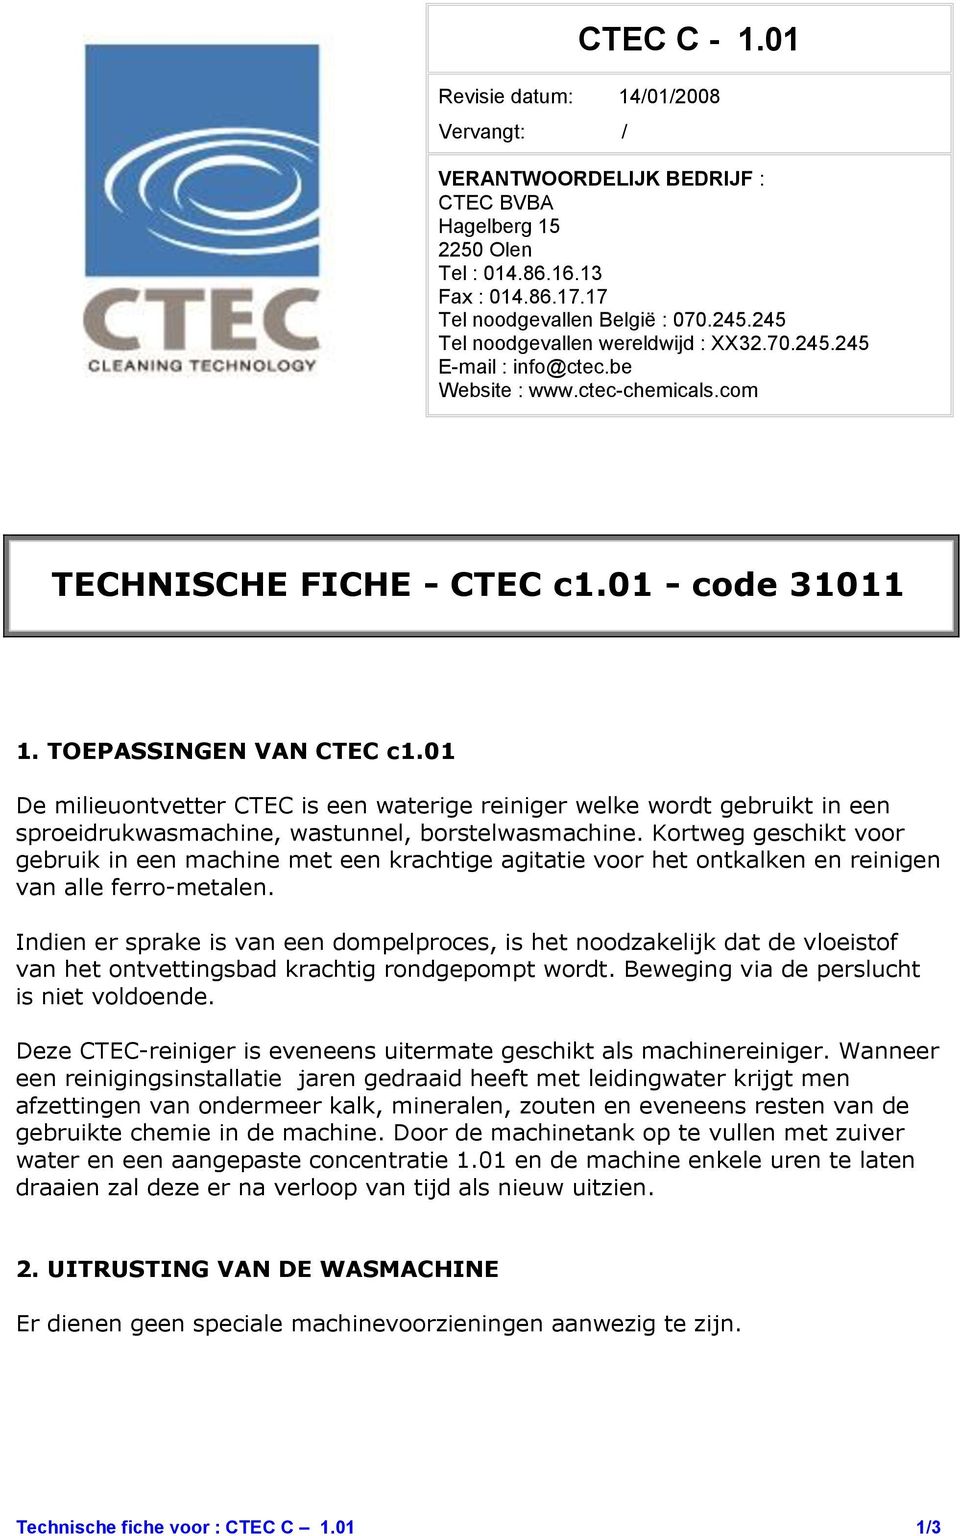 01 De milieuontvetter CTEC is een waterige reiniger welke wordt gebruikt in een sproeidrukwasmachine, wastunnel, borstelwasmachine.